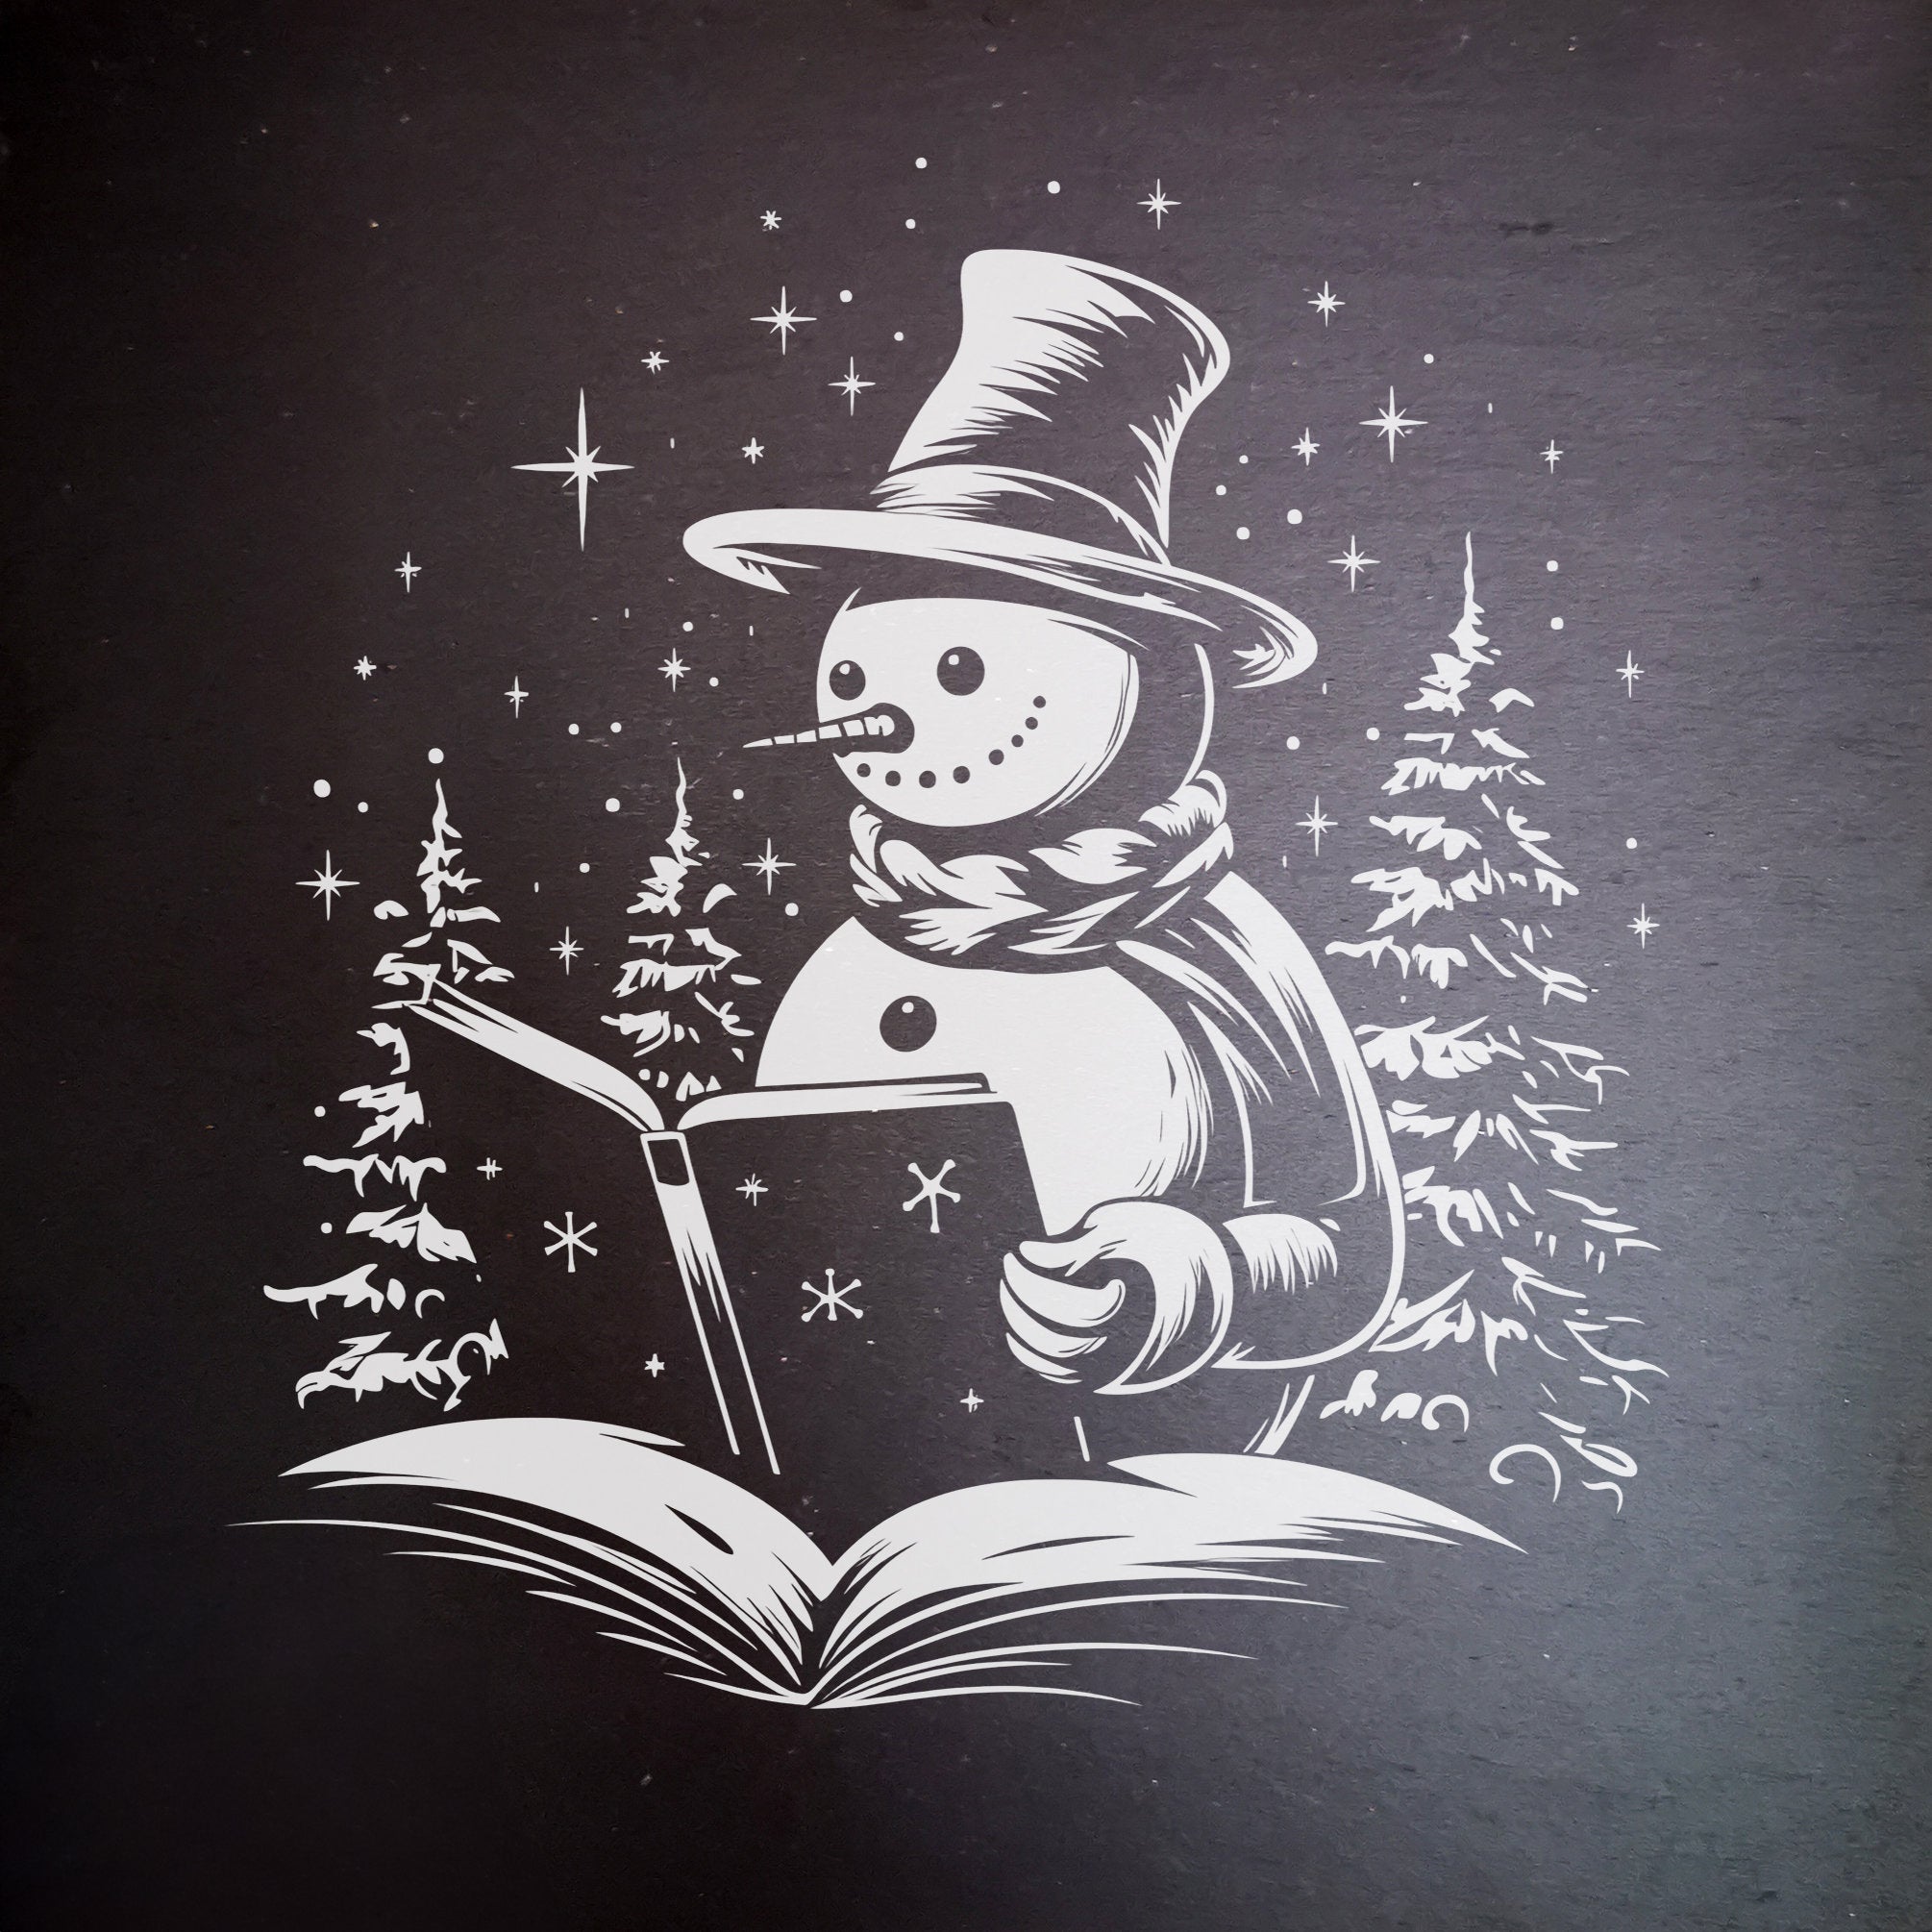 Slate - La aventura literaria del muñeco de nieve